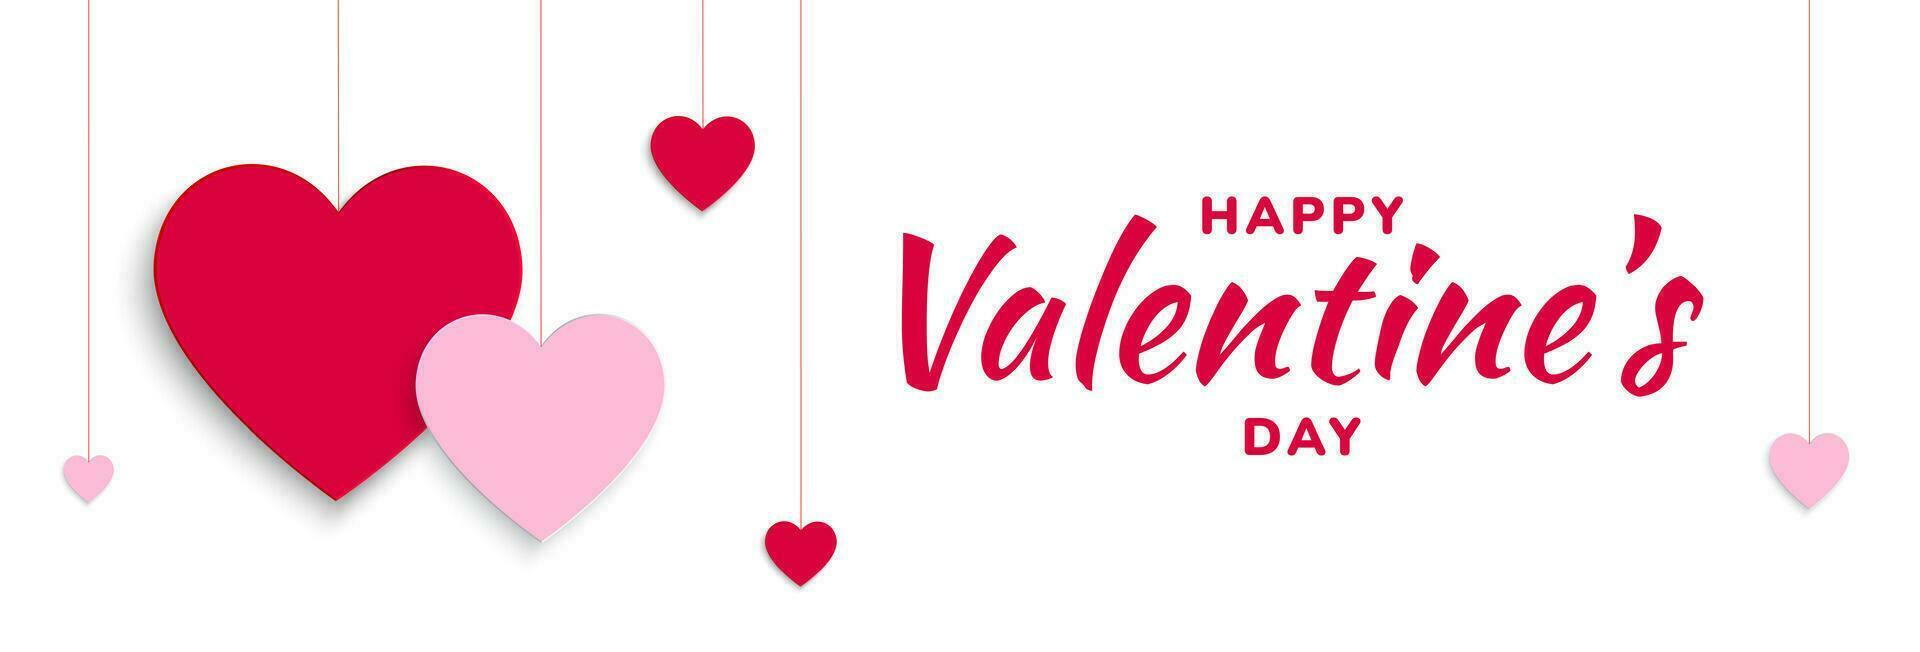 valentines dag bakgrund med röd och rosa papper hjärta element. vektor illustration